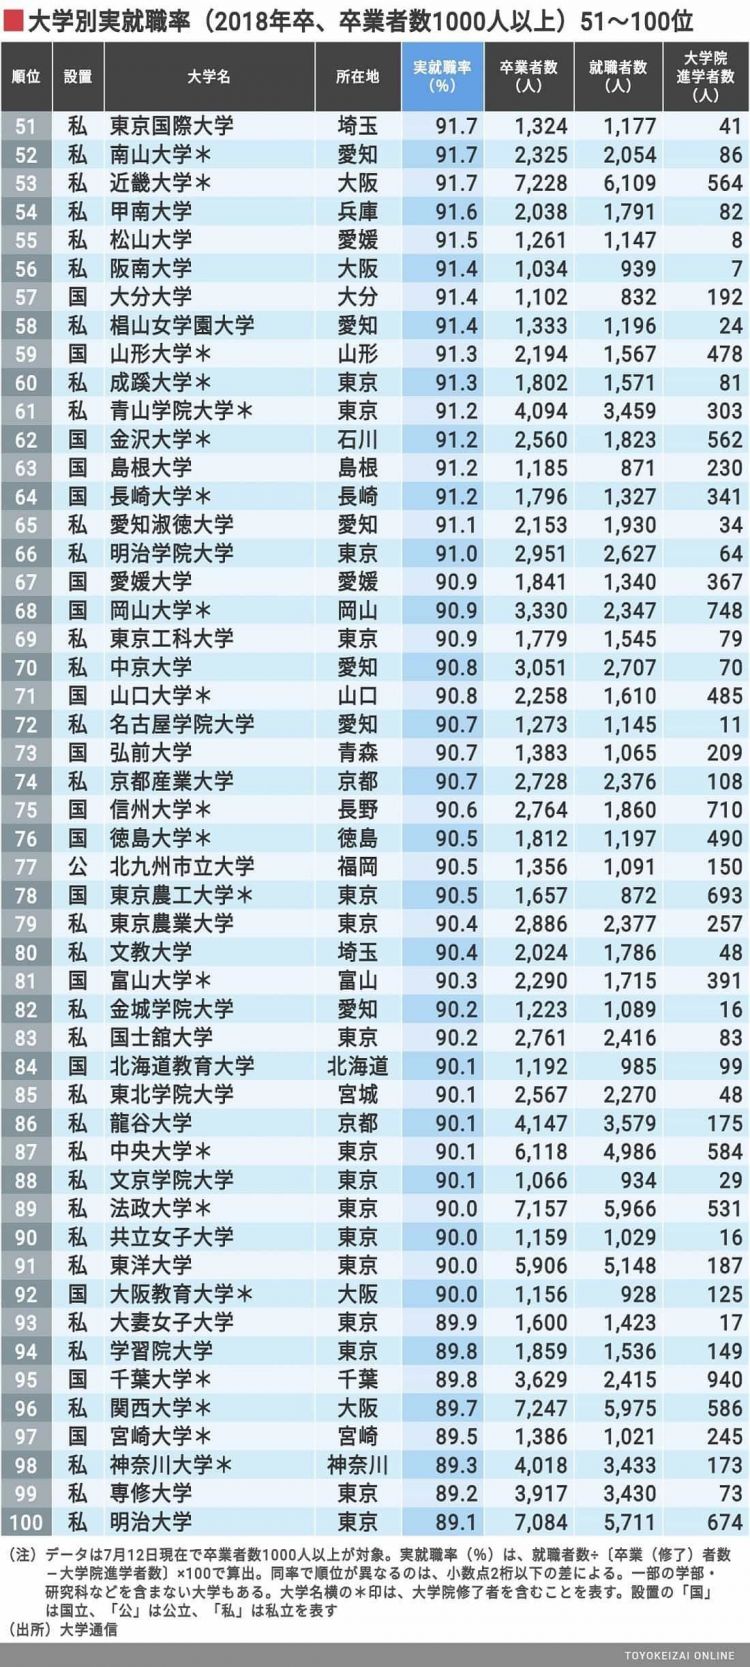 2020年日本各大学就业率排行榜公布，金泽工业大学连续4年蝉联榜首，就业率高达98.1%